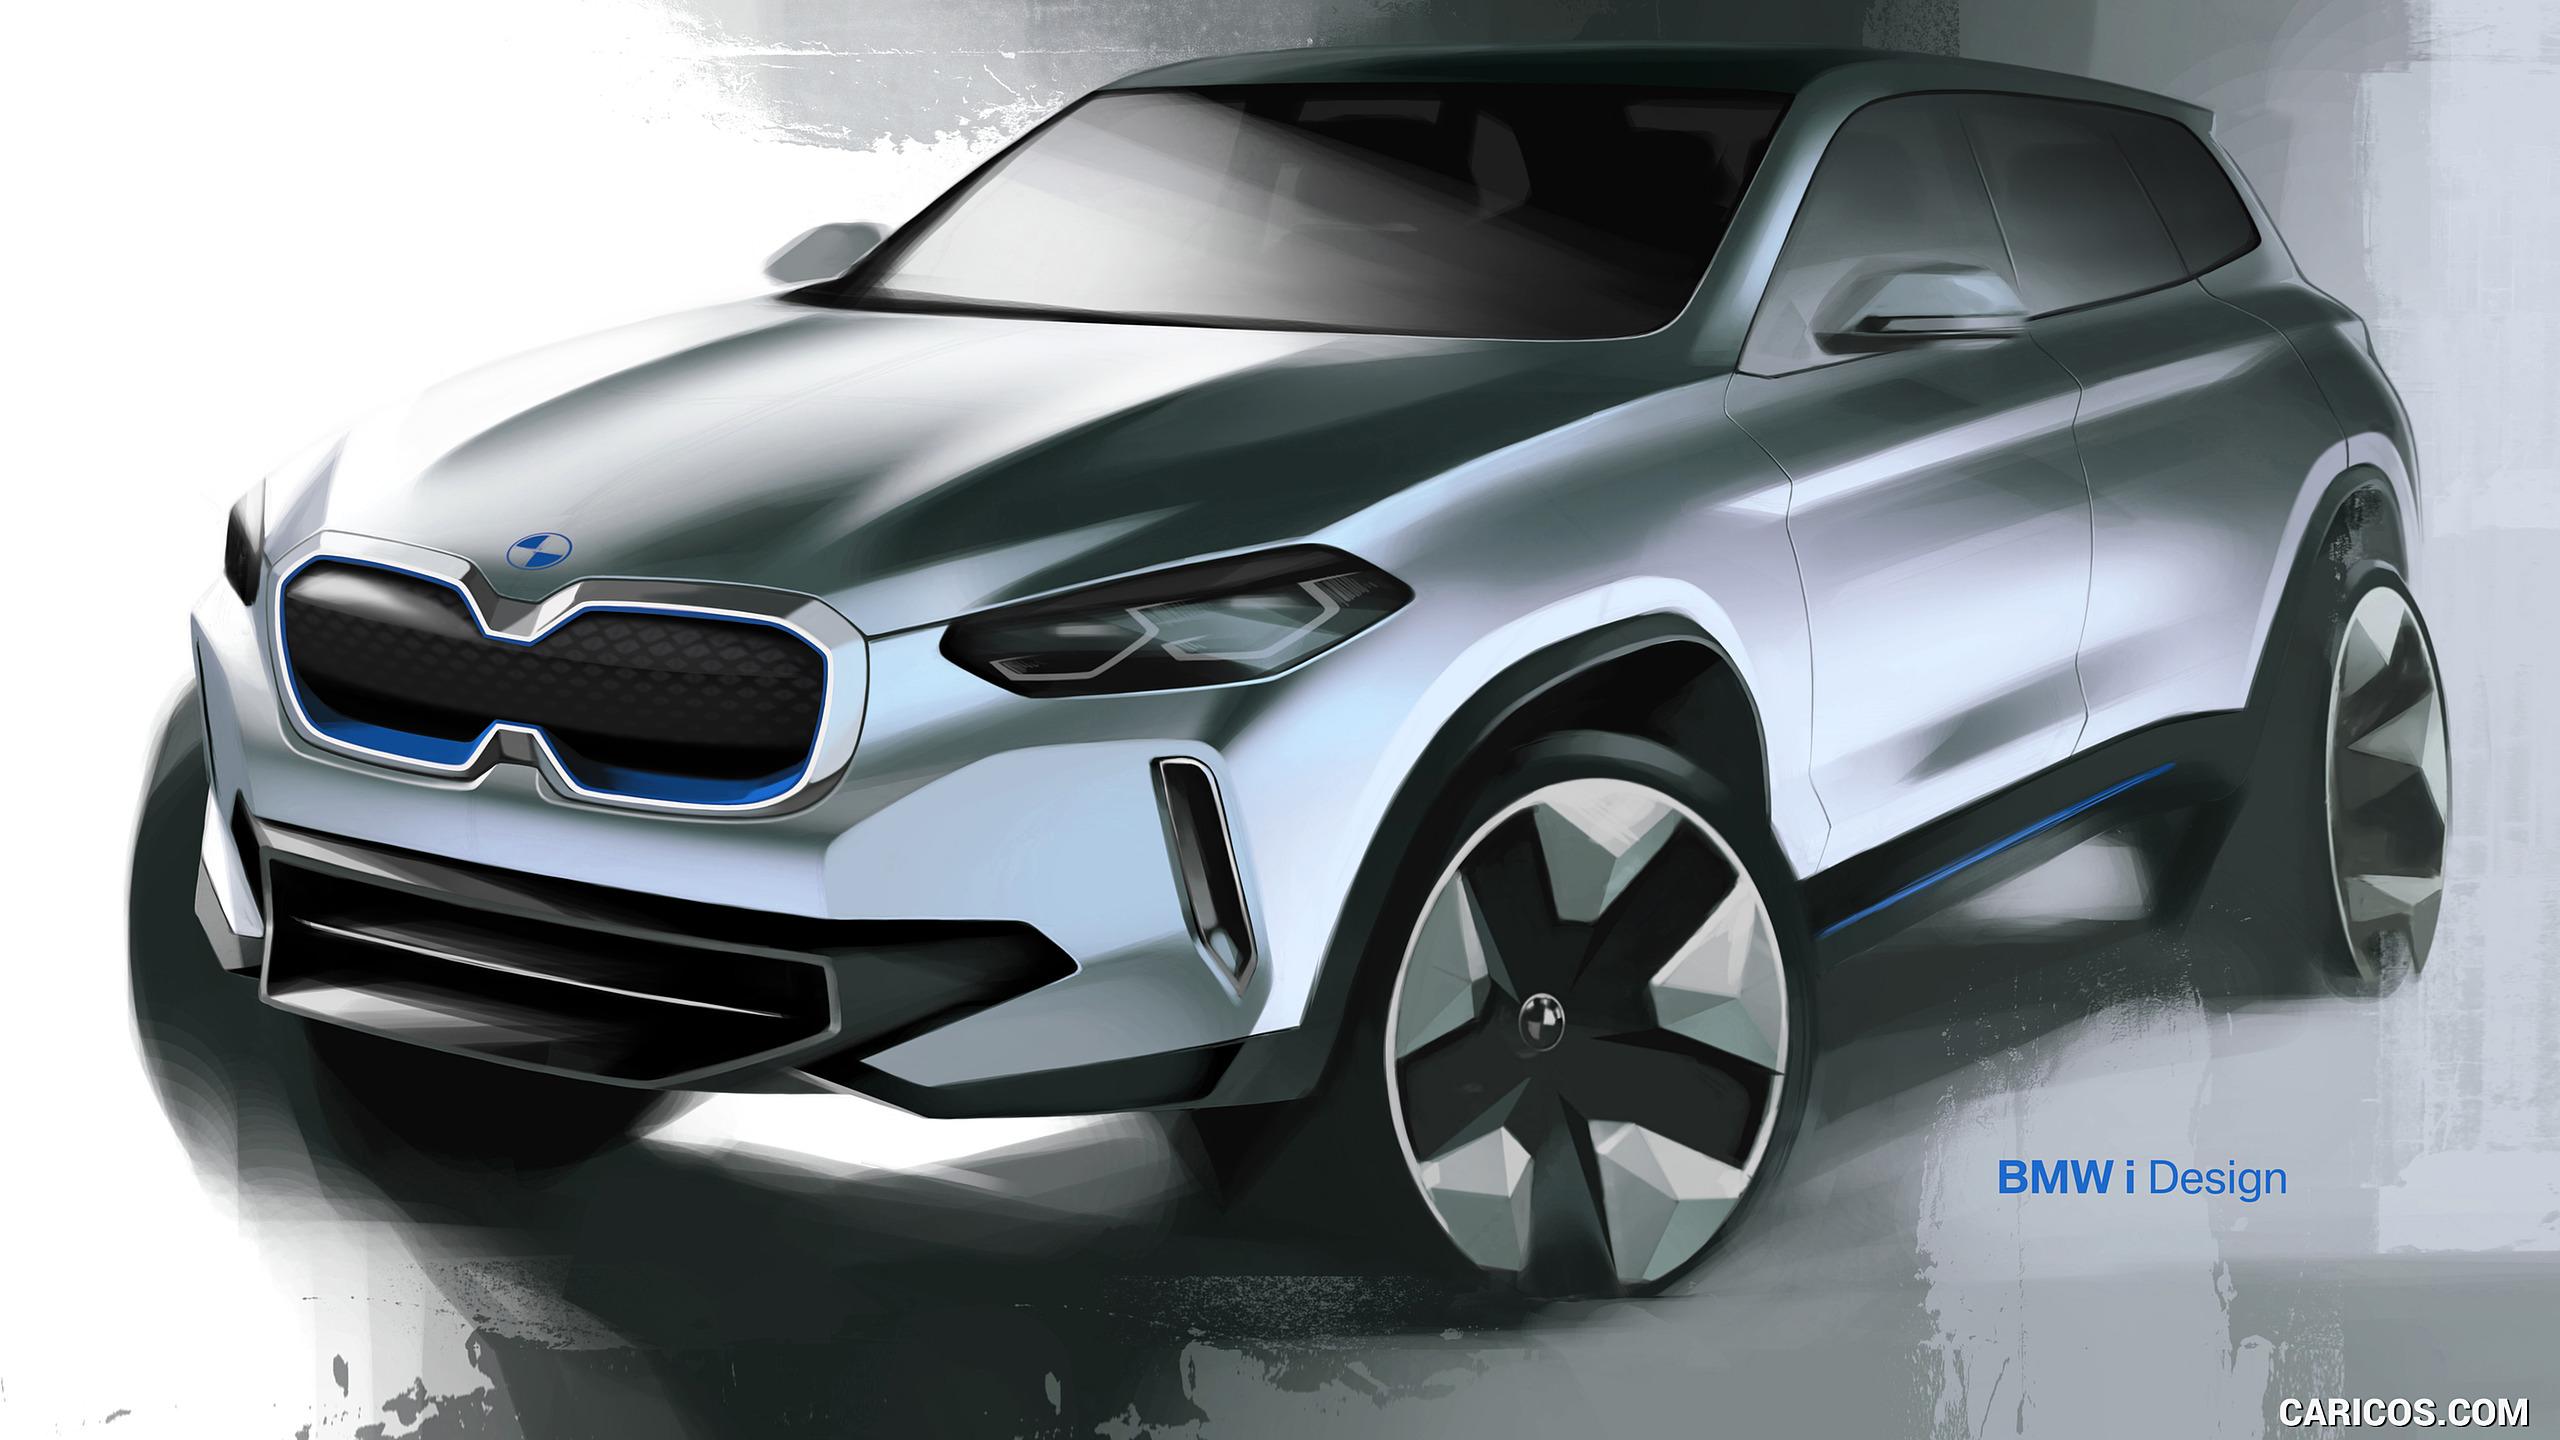 BMW iX3 Concept Sketch. HD Wallpaper